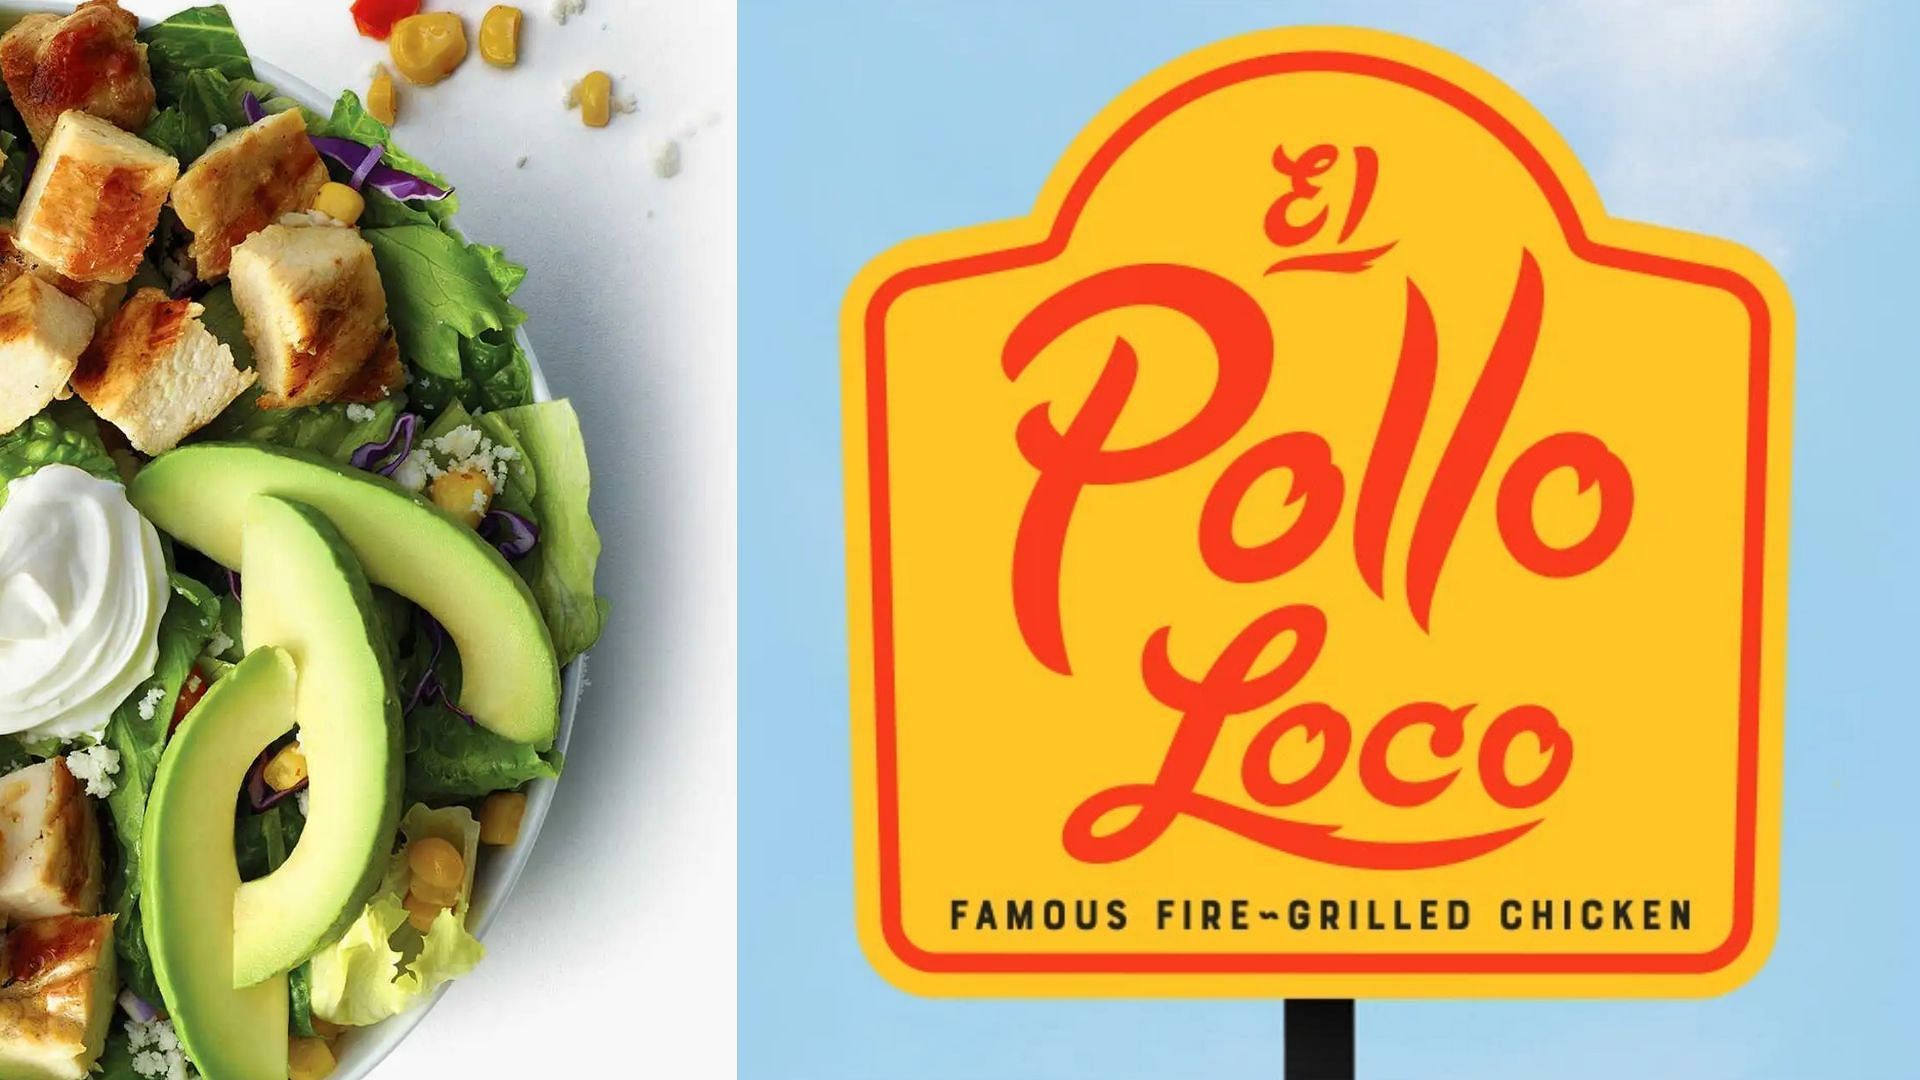 El Pollo Loco launches 12 Days of Pollo deal (Image via El Pollo Loco)